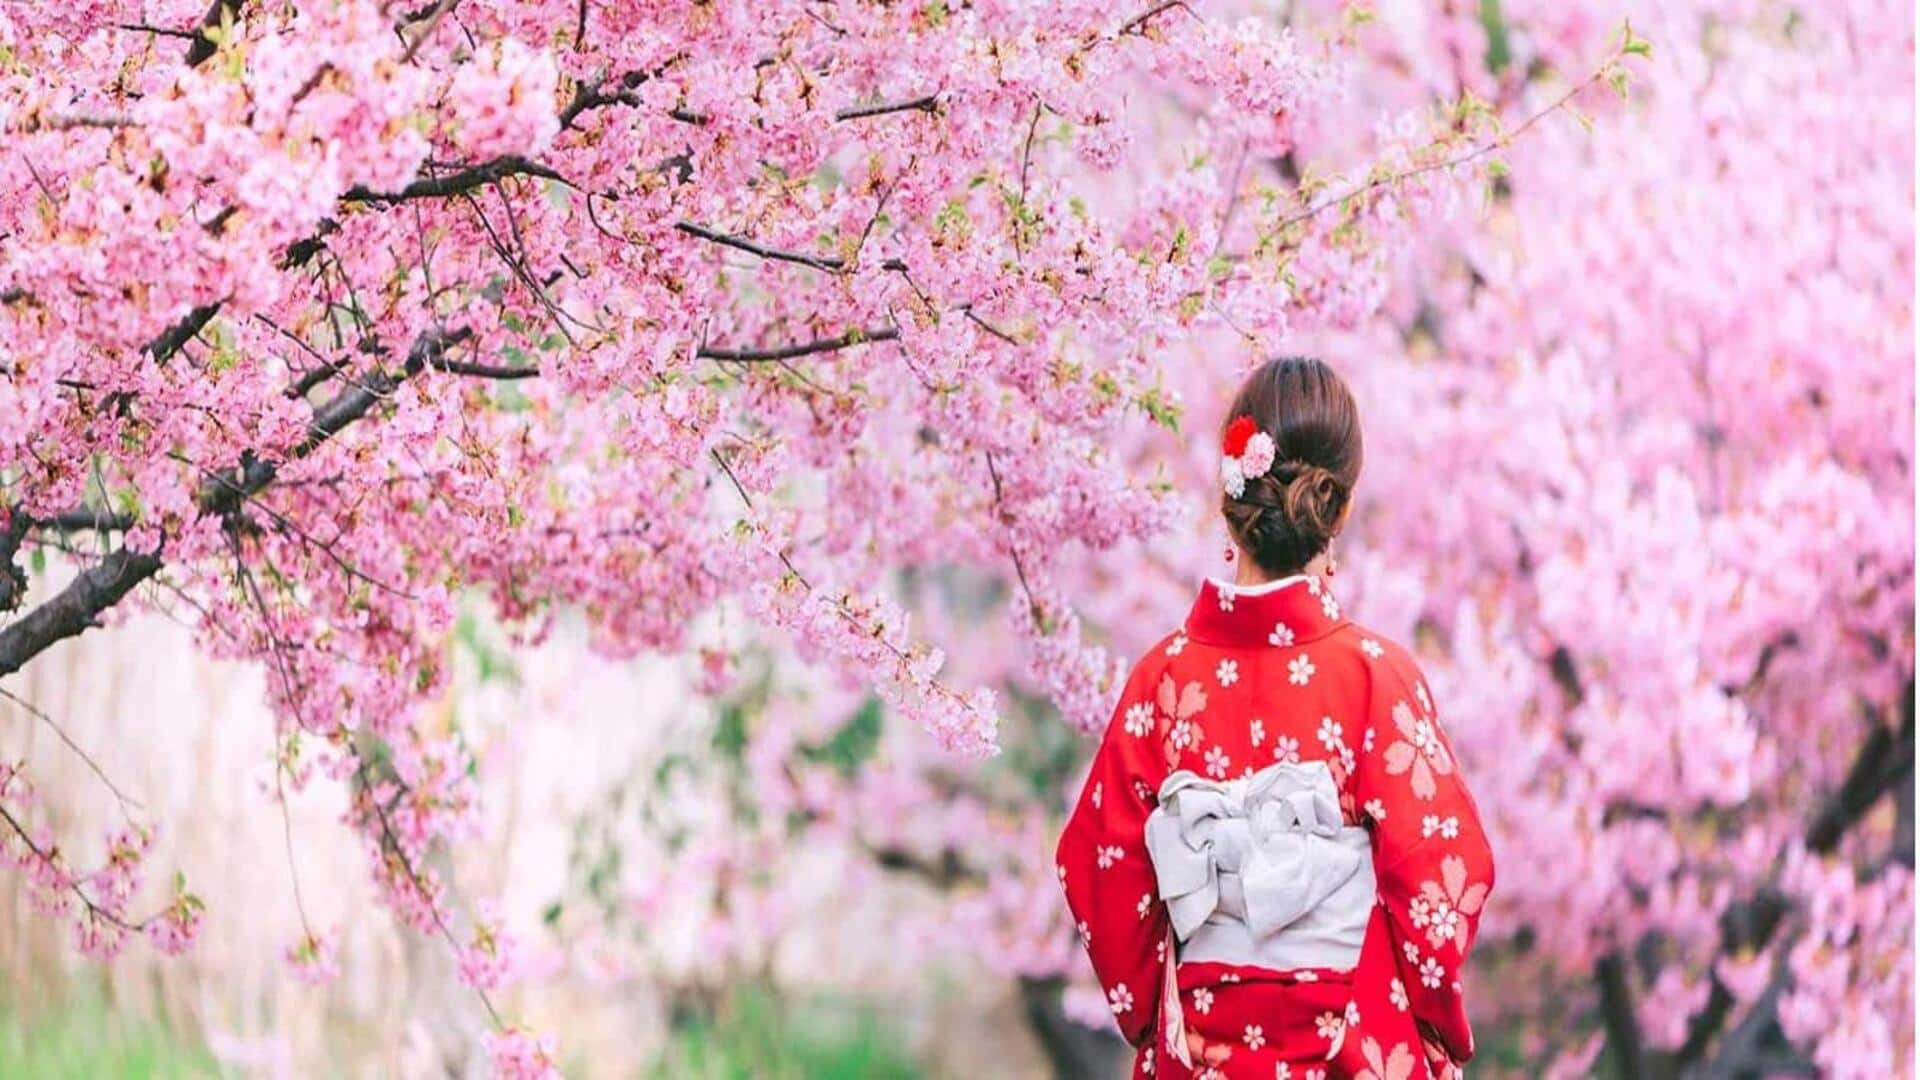 Saksikan bunga sakura di Kyoto dengan panduan perjalanan ini